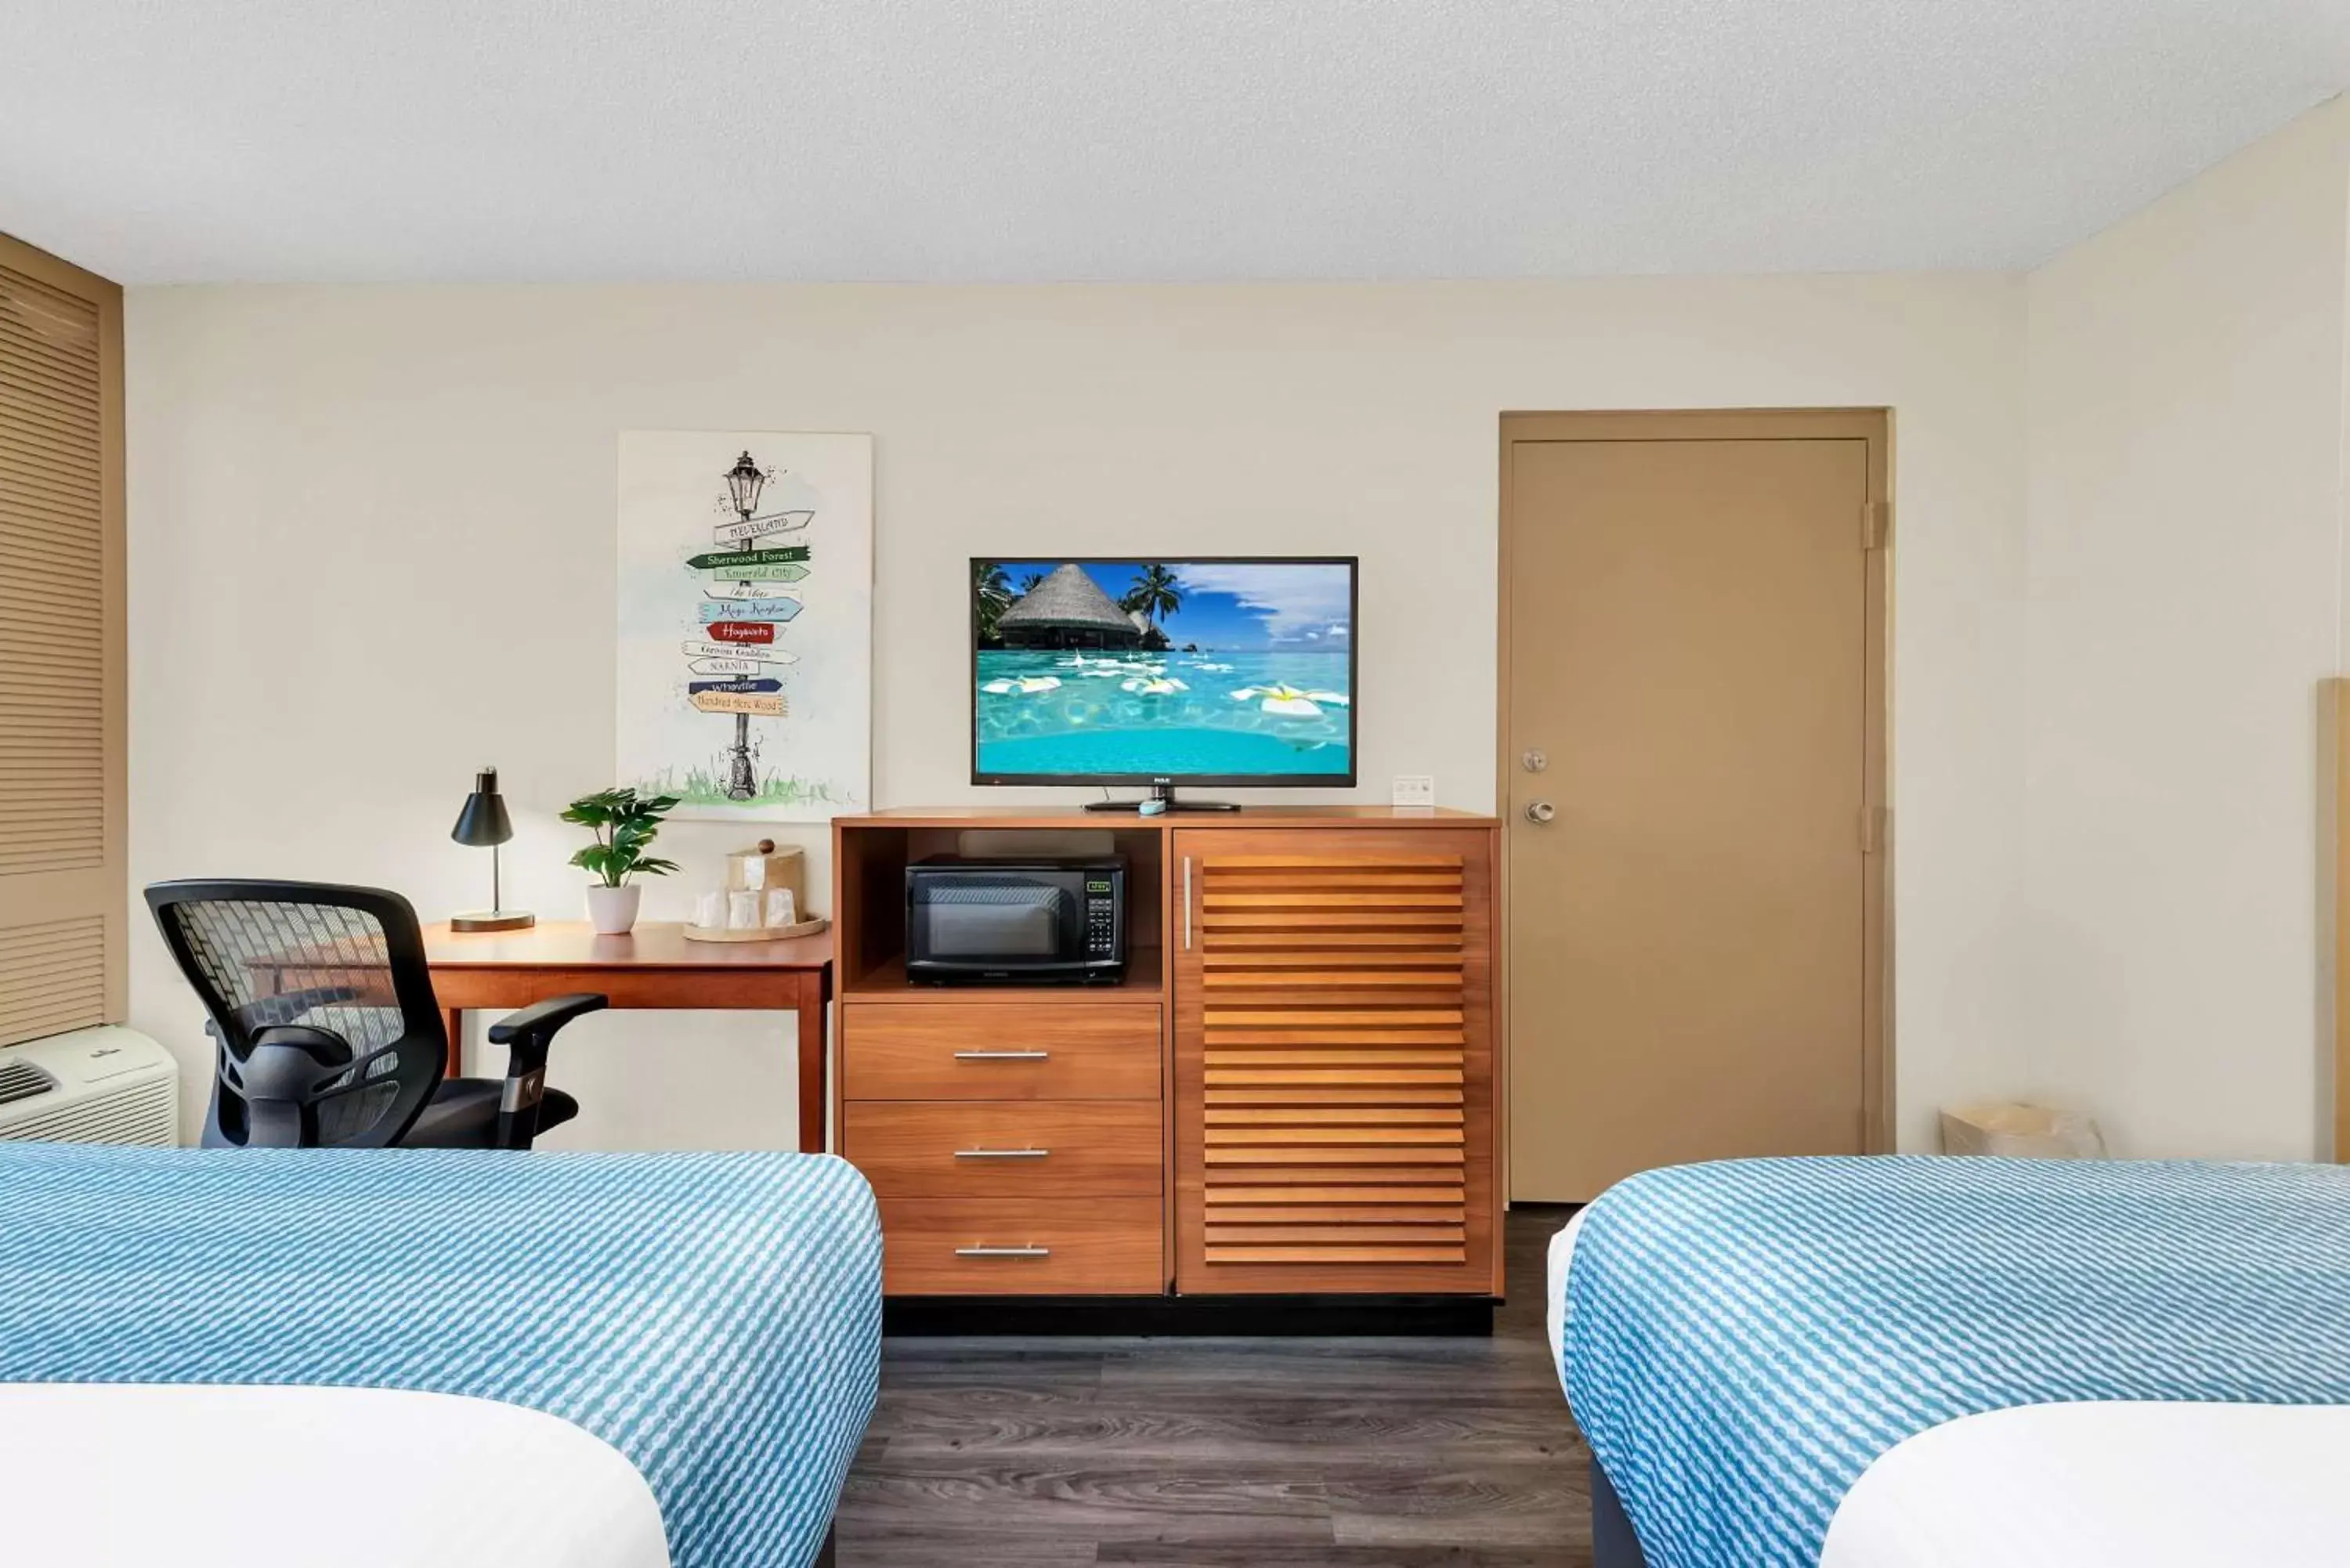 Bedroom, TV/Entertainment Center in Best Western Orlando Gateway Hotel